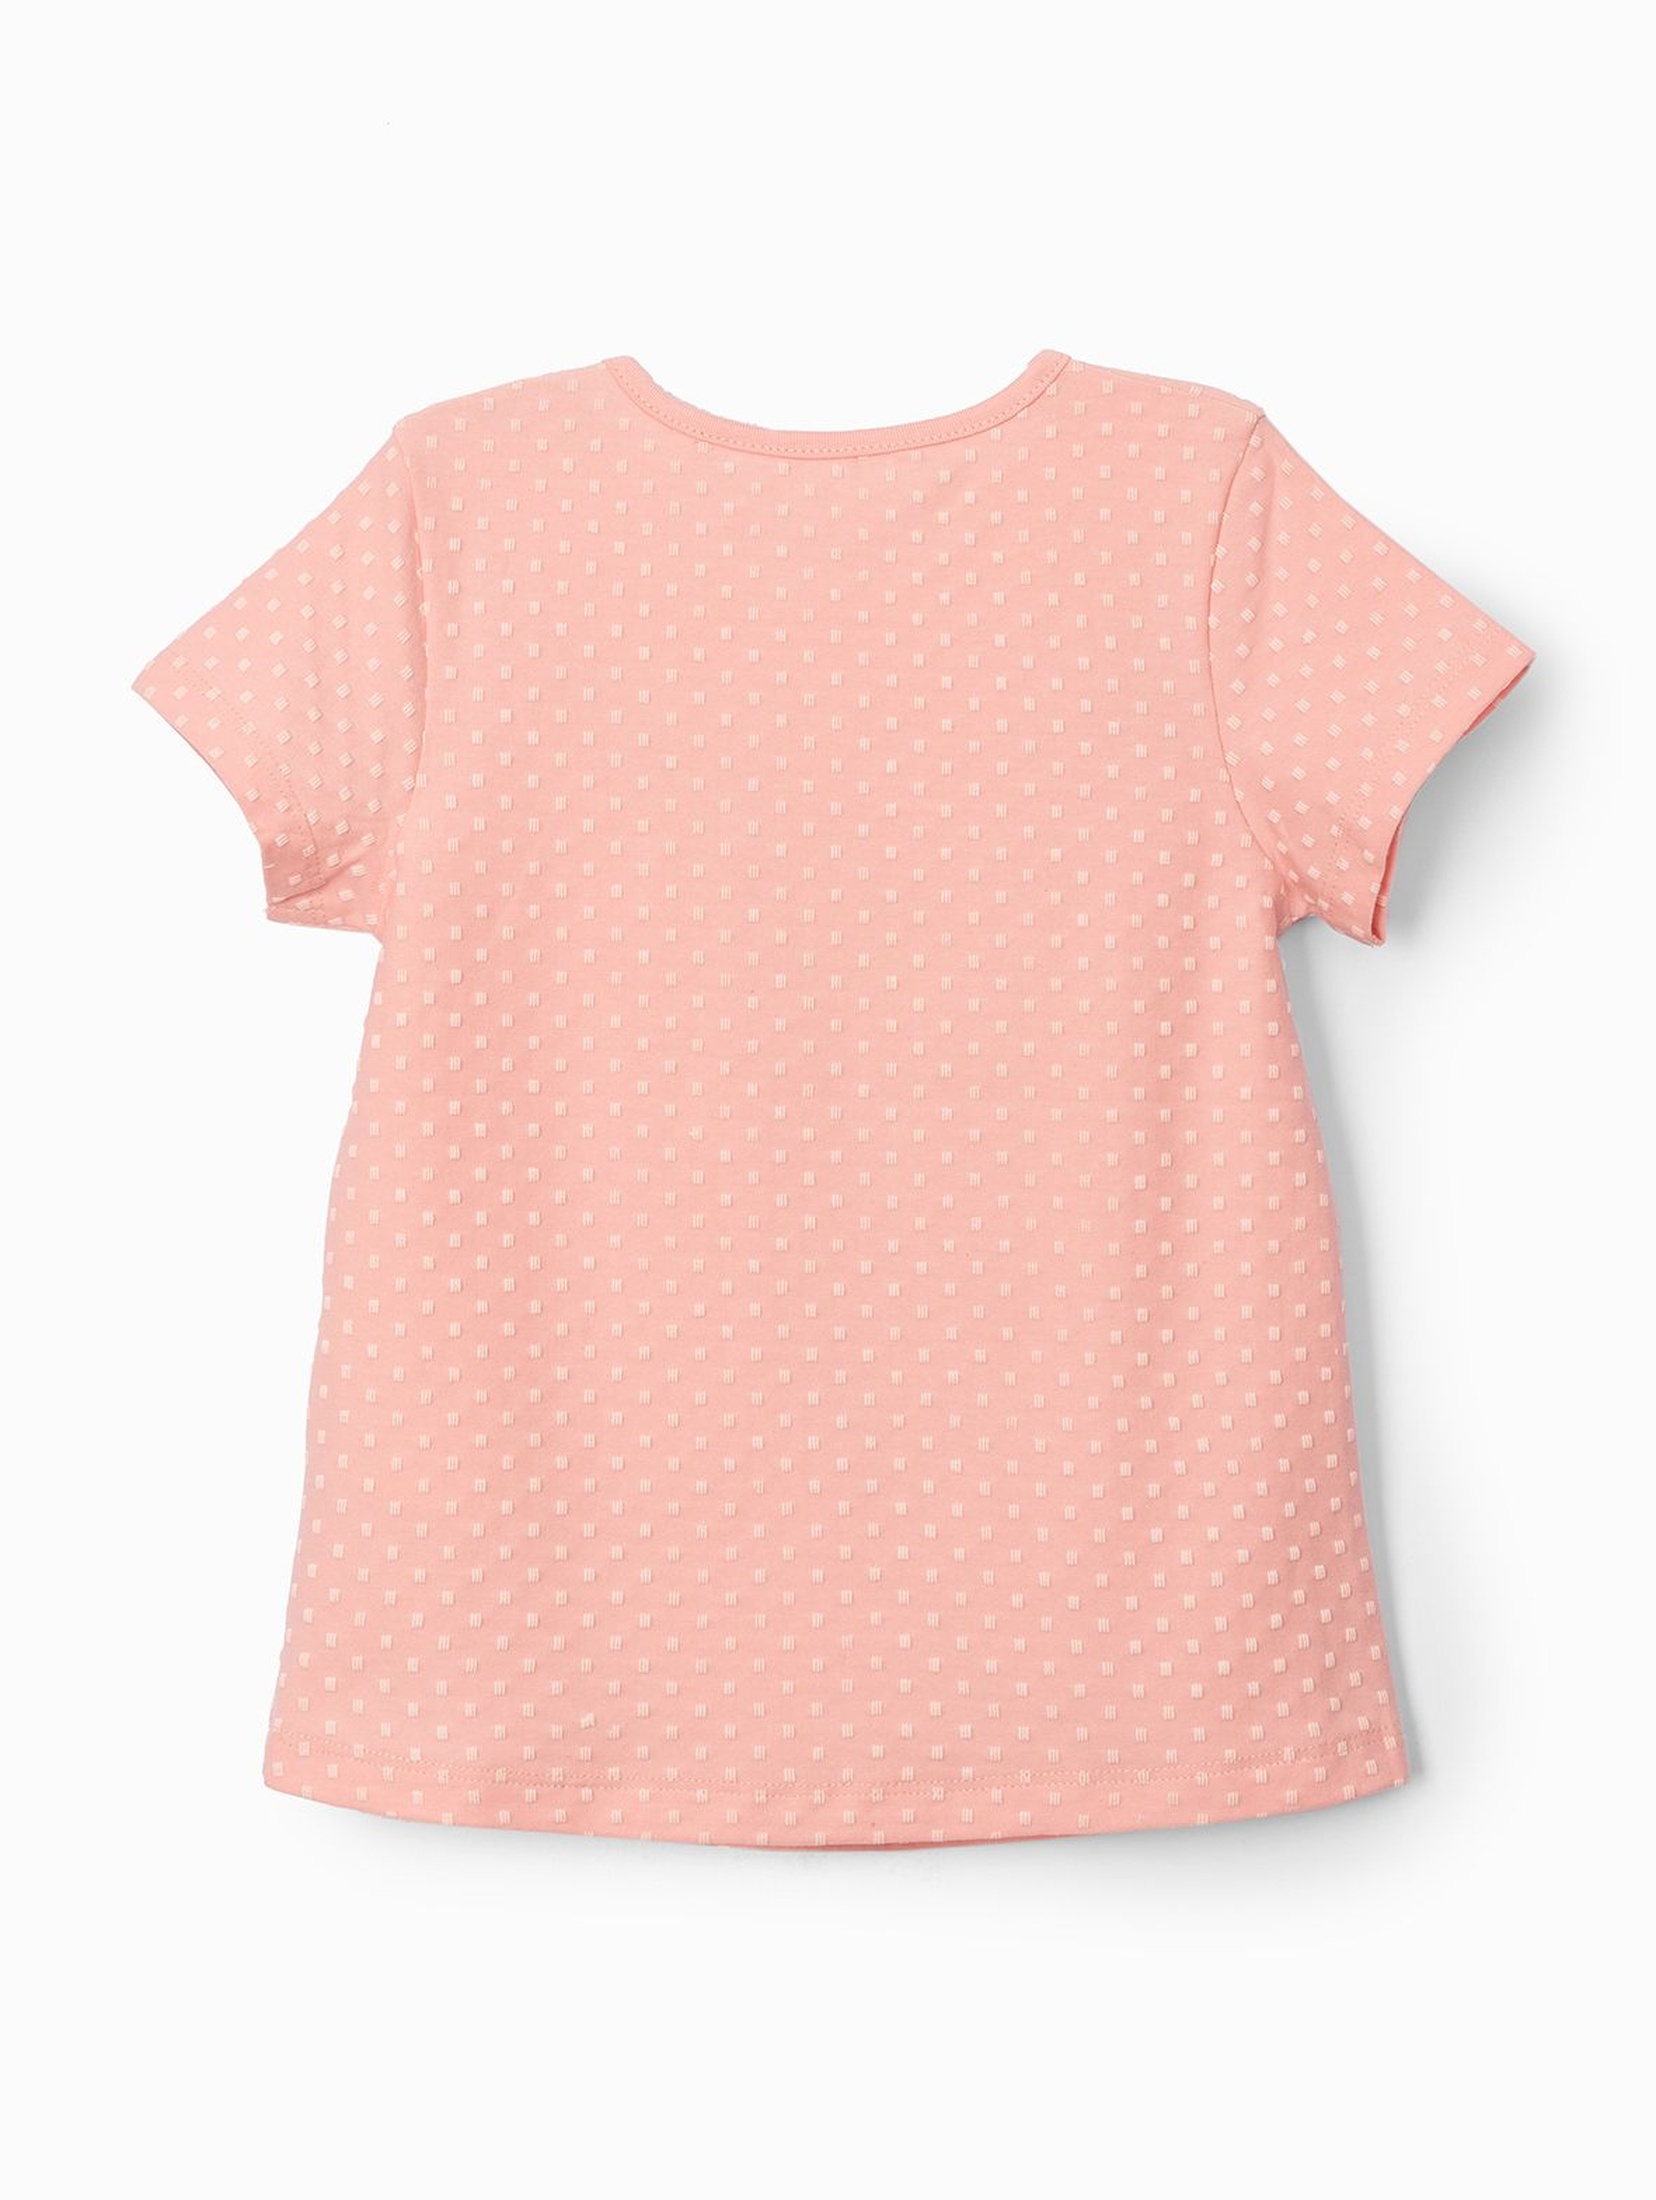 T-shirt dziewczęcy - różowy z delikatnym nadrukiem